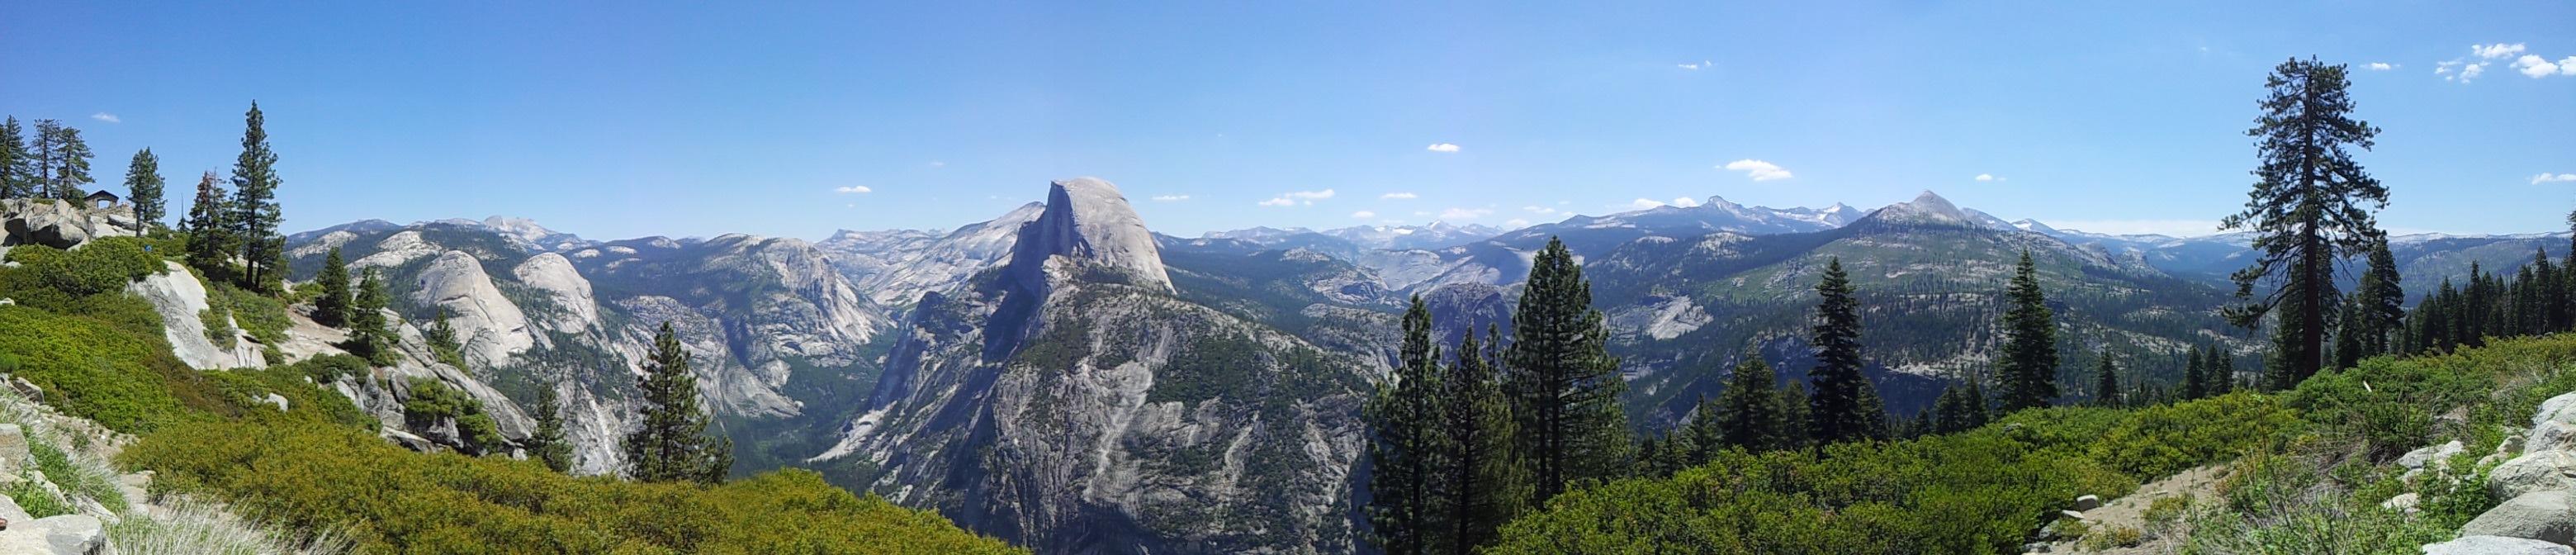 Yosemite_03.jpg